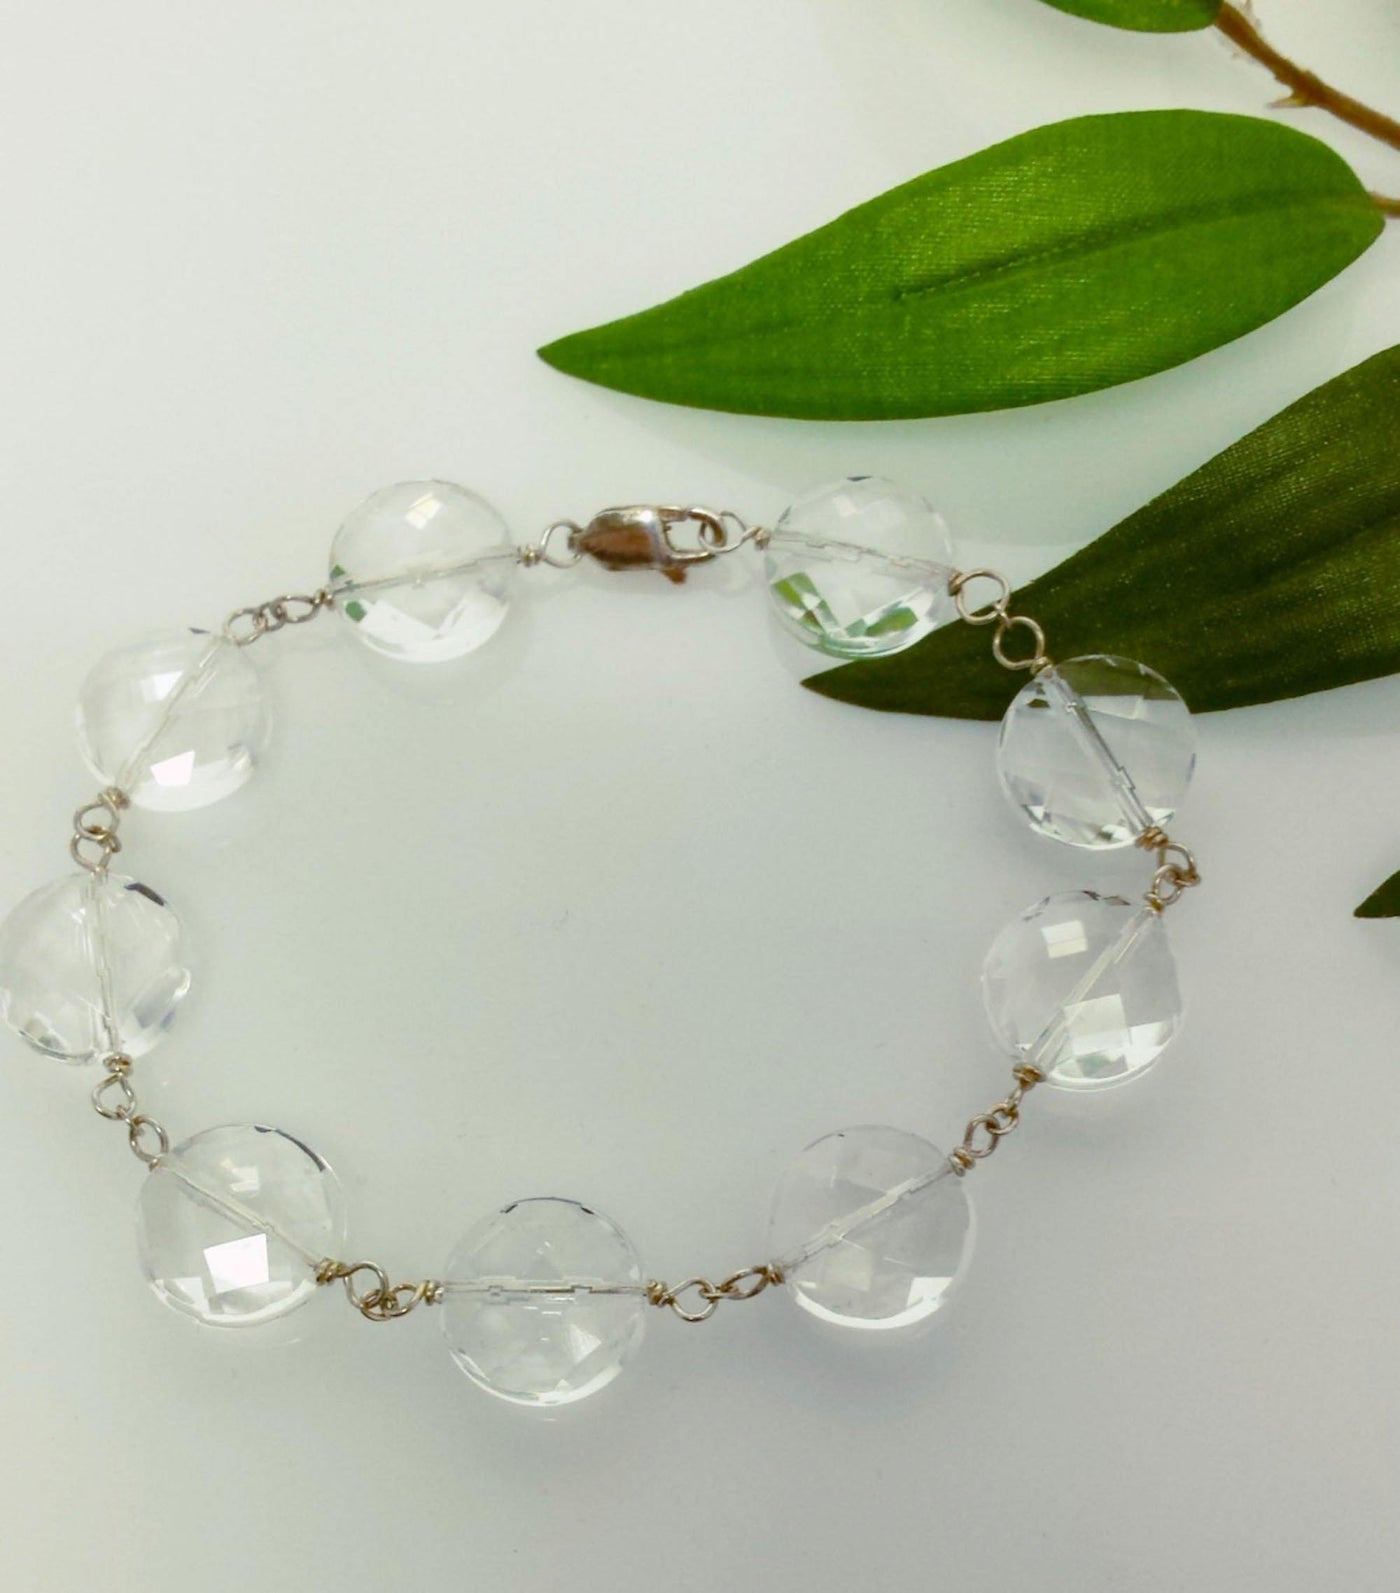 Clear quartz prismatic bracelet - LB Designs